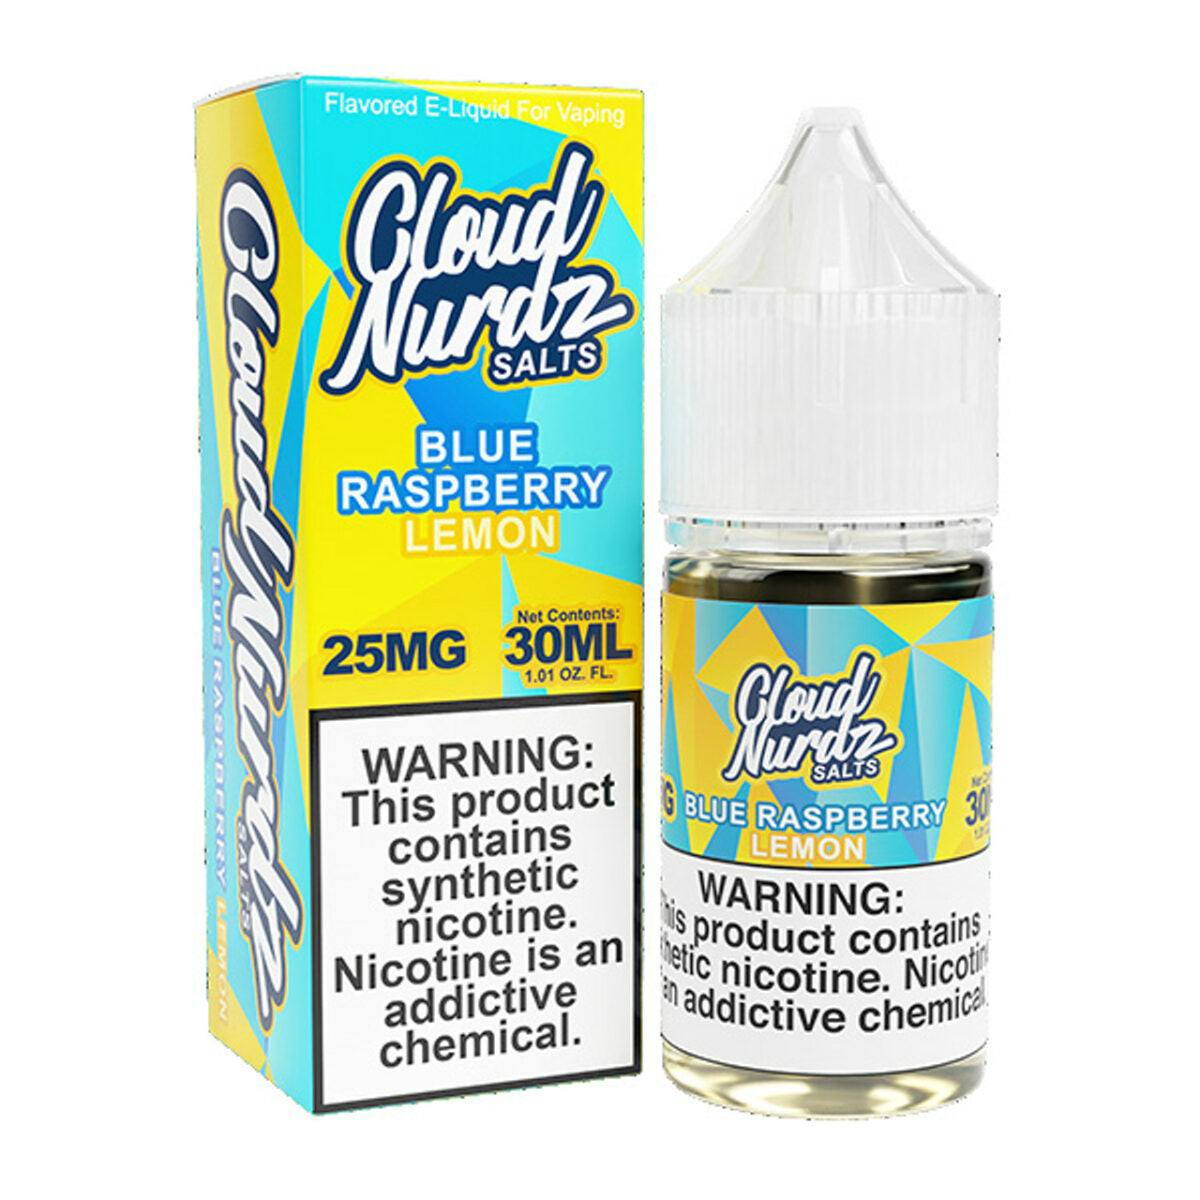 Blue Raspberry Lemon by Cloud Nurdz Salts Series 30mL with Packaging